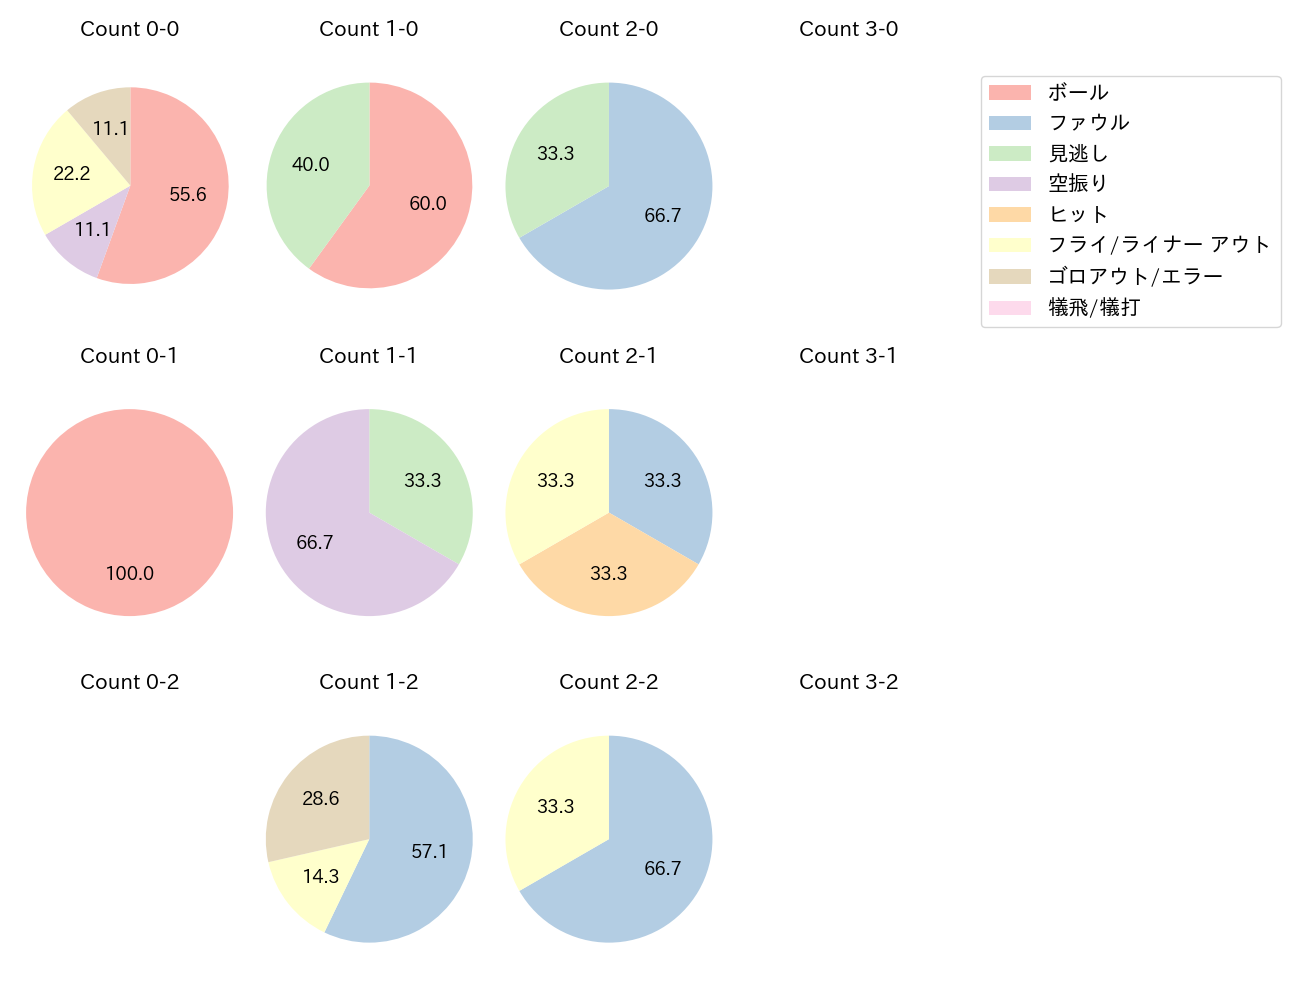 立岡 宗一郎の球数分布(2022年6月)